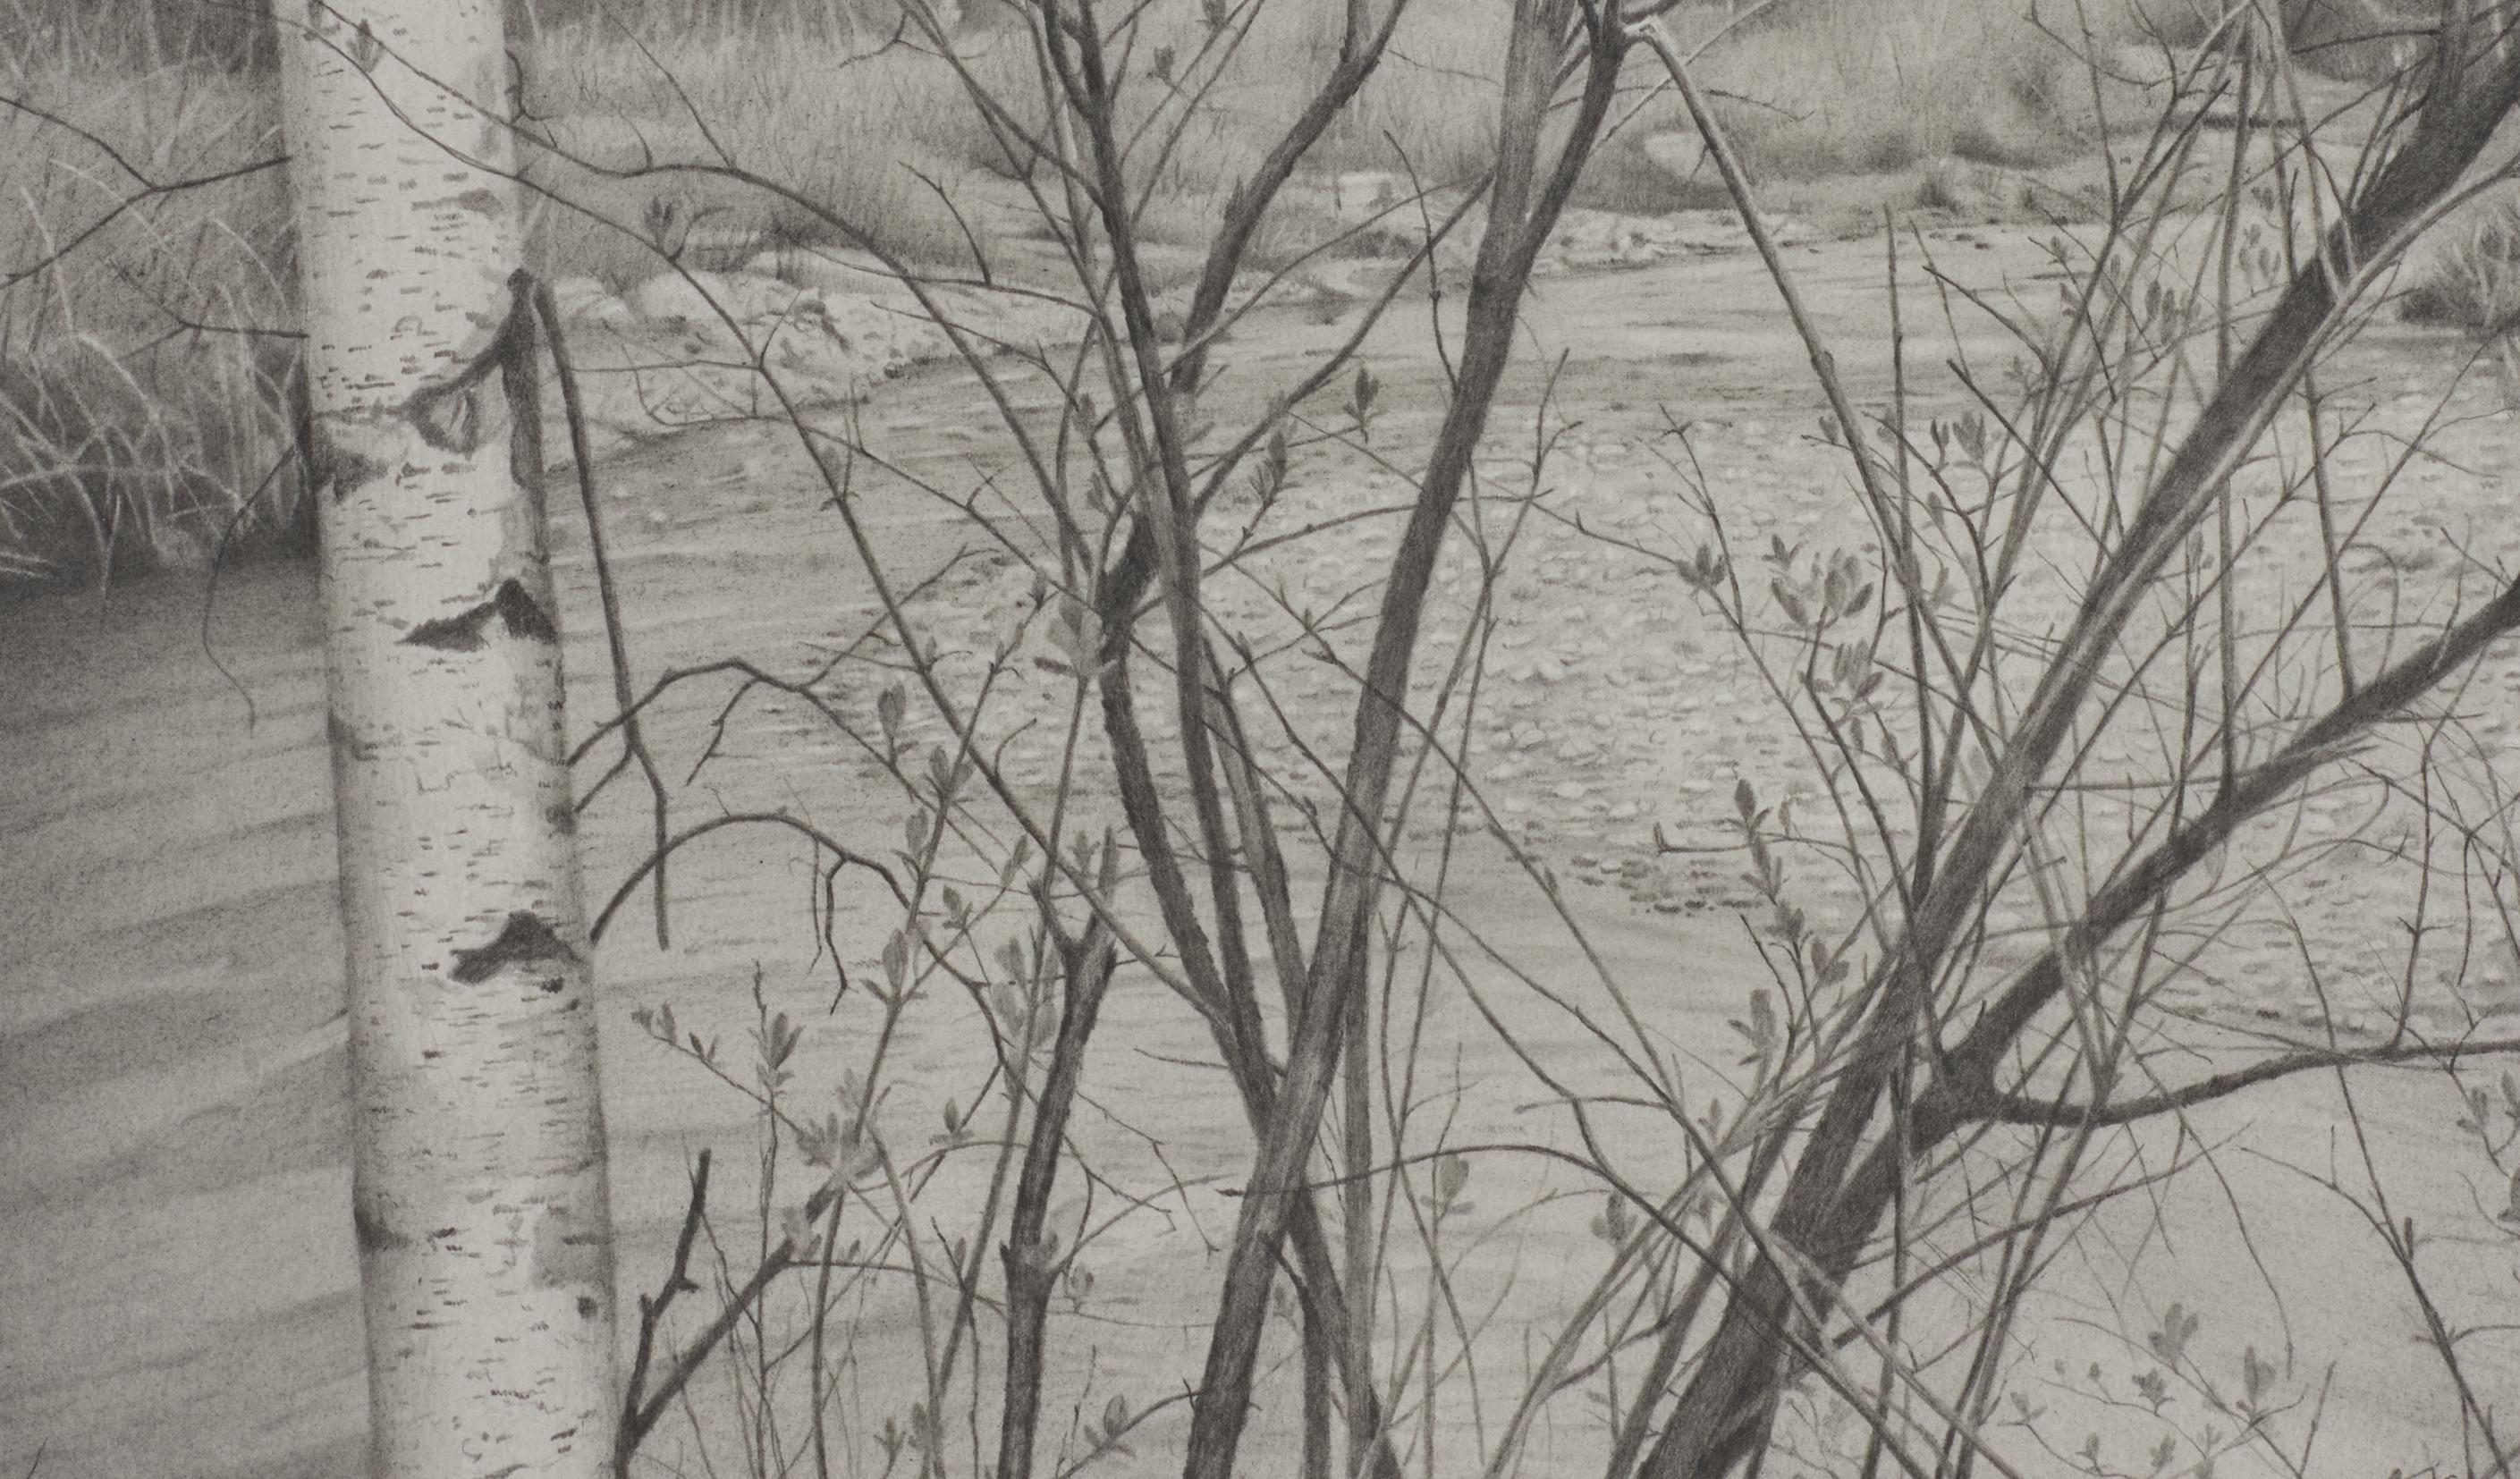 Riverbank 4, fotorealistische Graphit-Landschaftszeichnung, 2020 (Grau), Landscape Art, von Mary Reilly